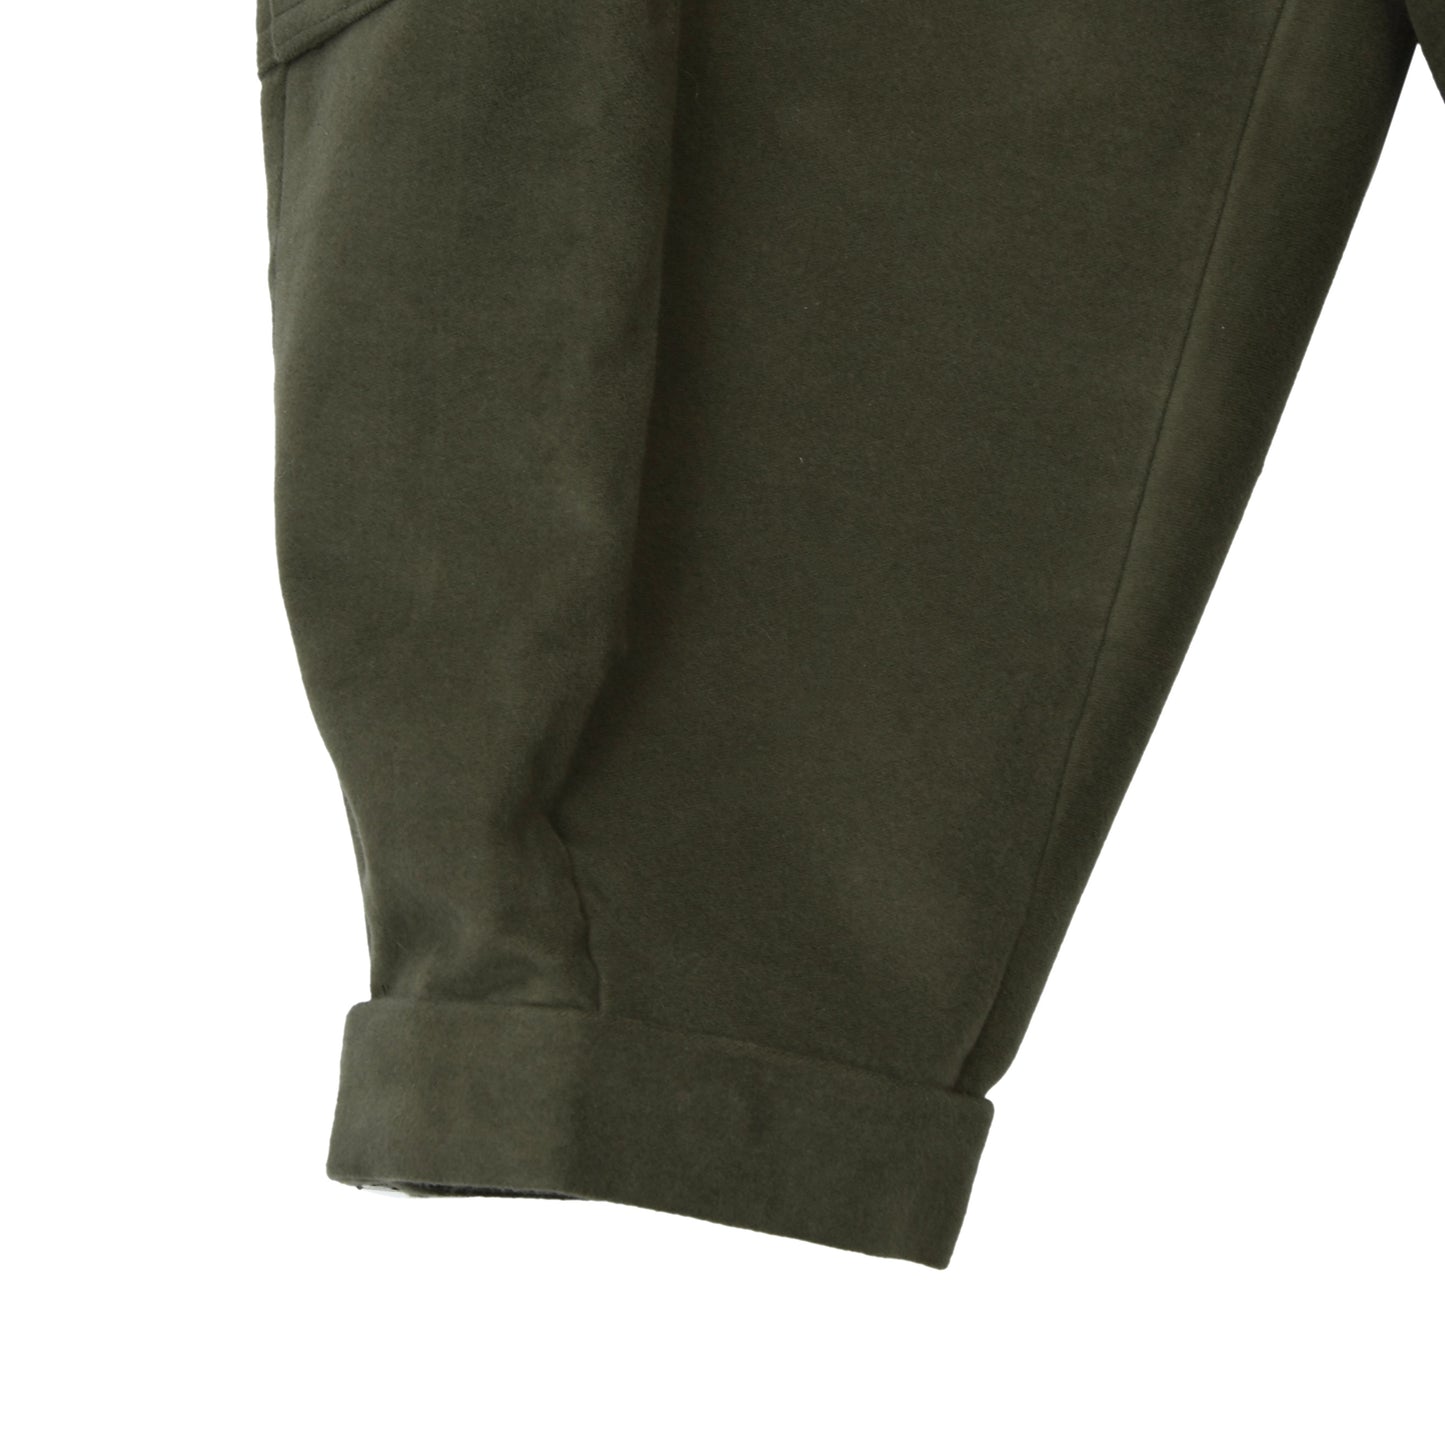 Ketterer Cotton Moleskin Knickerbockers/Breeks Size 27 - Green